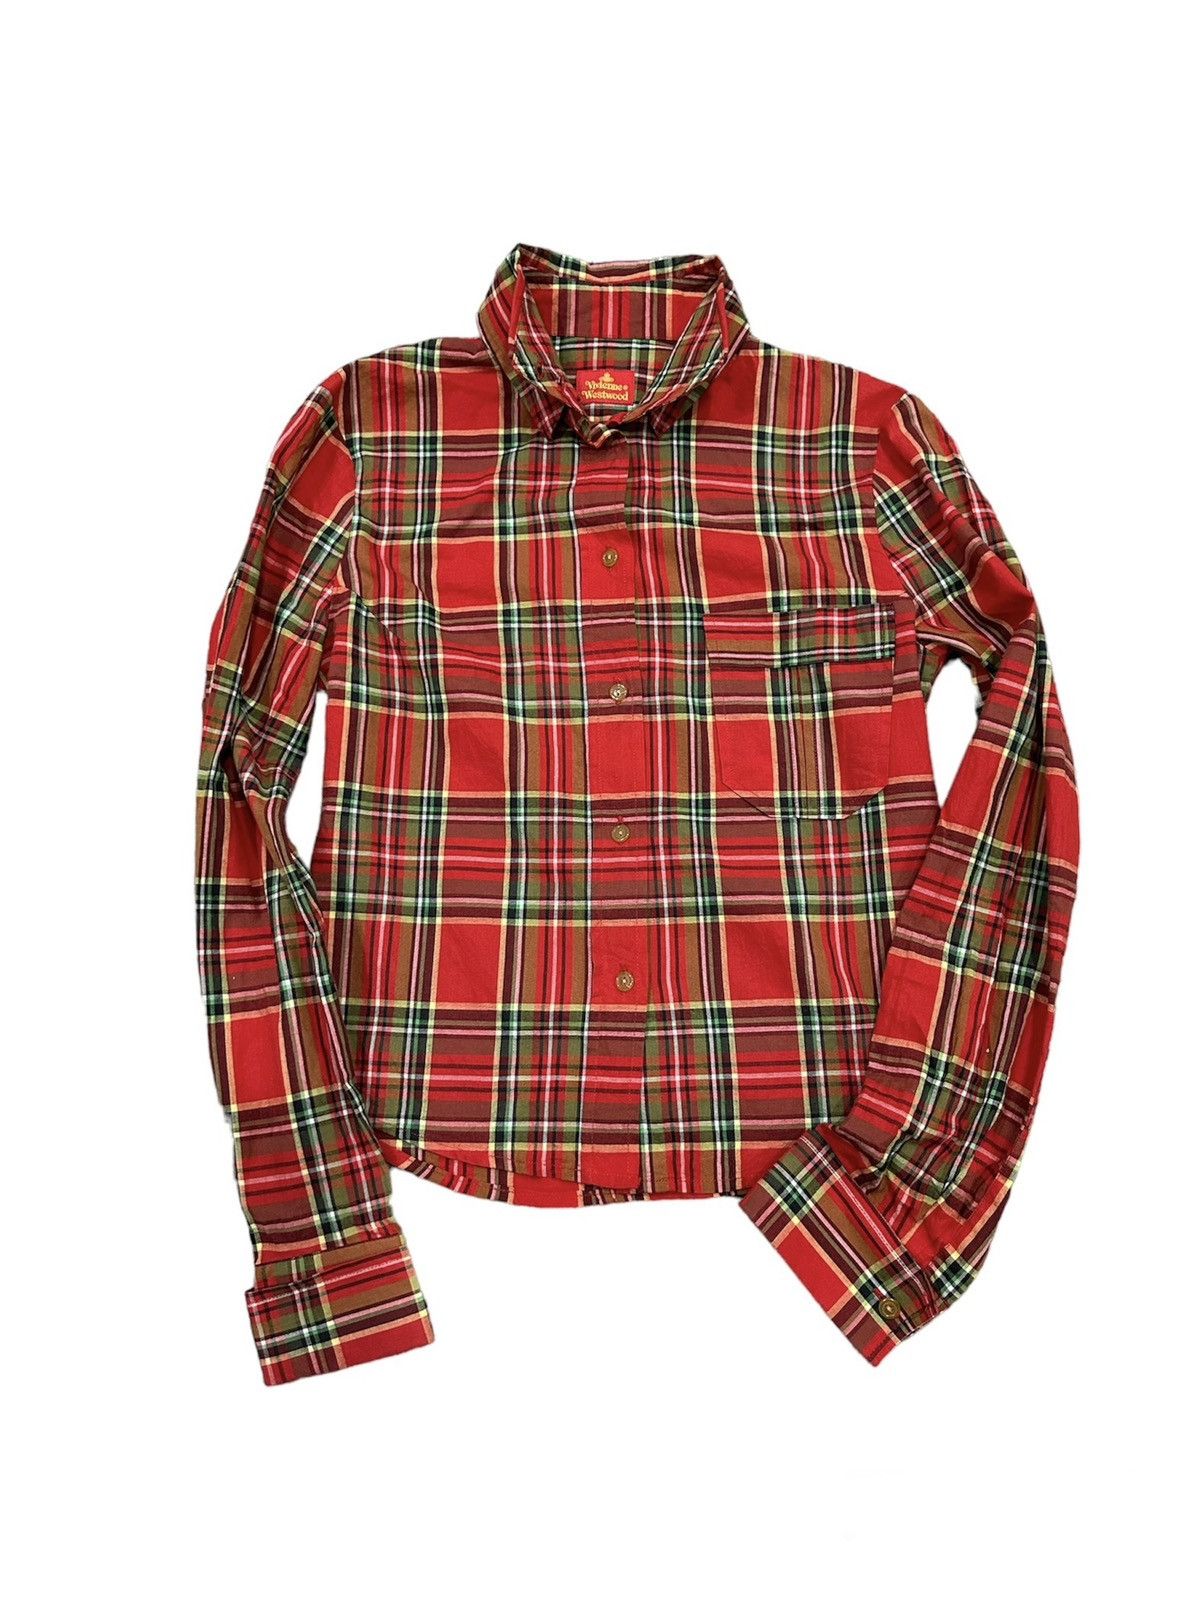 Vivienne Westwood OG Red Tartan Shirt - 1